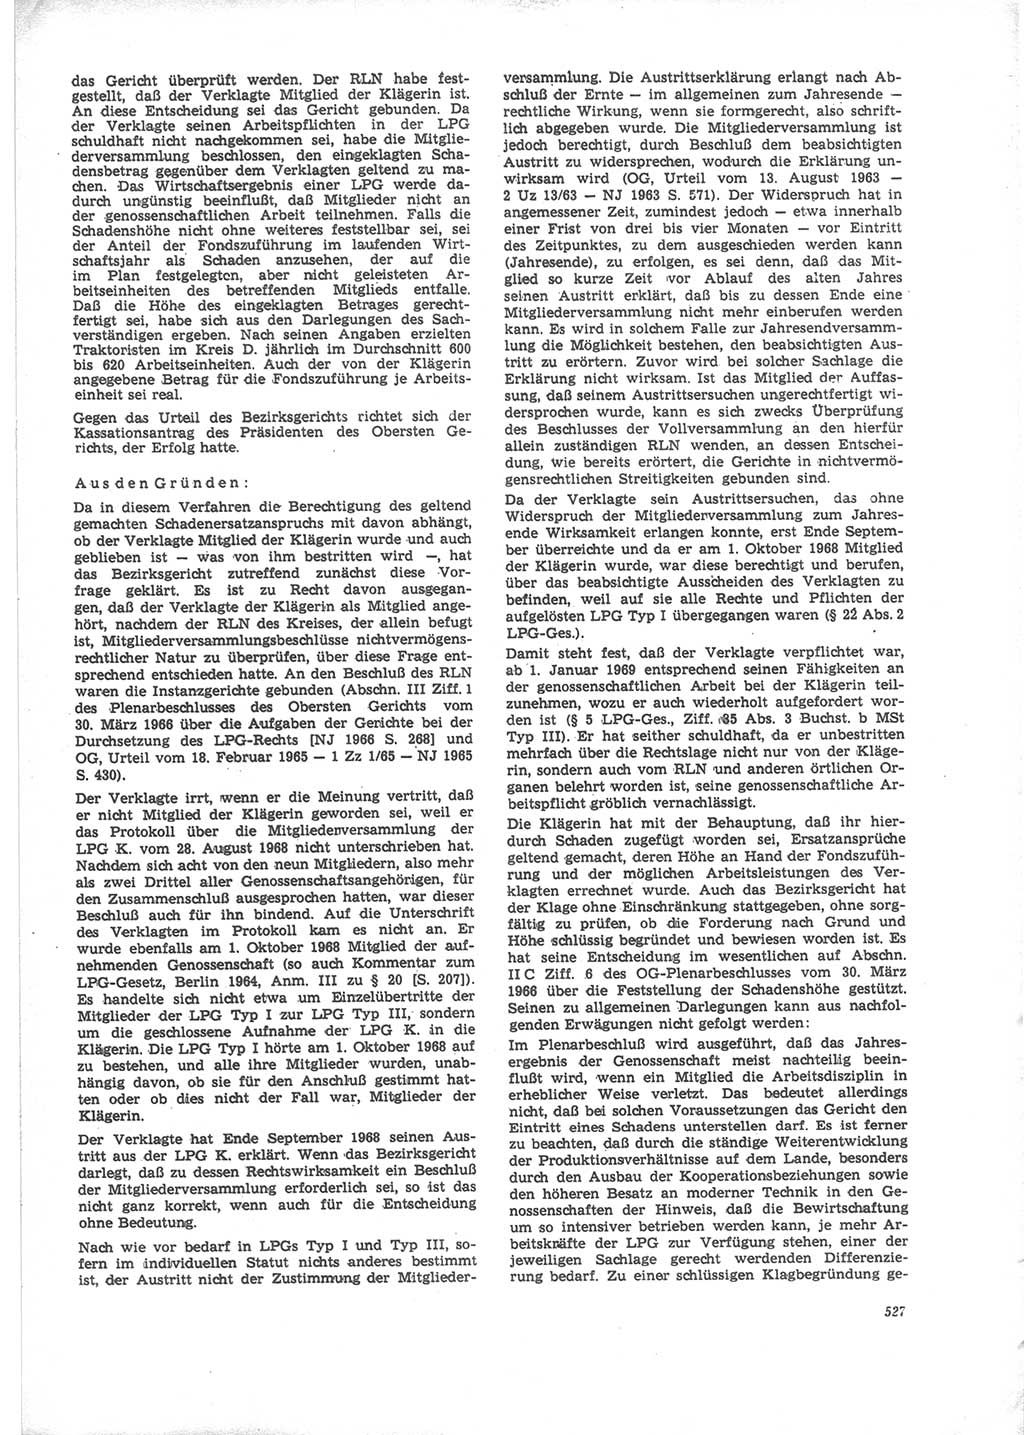 Neue Justiz (NJ), Zeitschrift für Recht und Rechtswissenschaft [Deutsche Demokratische Republik (DDR)], 24. Jahrgang 1970, Seite 527 (NJ DDR 1970, S. 527)